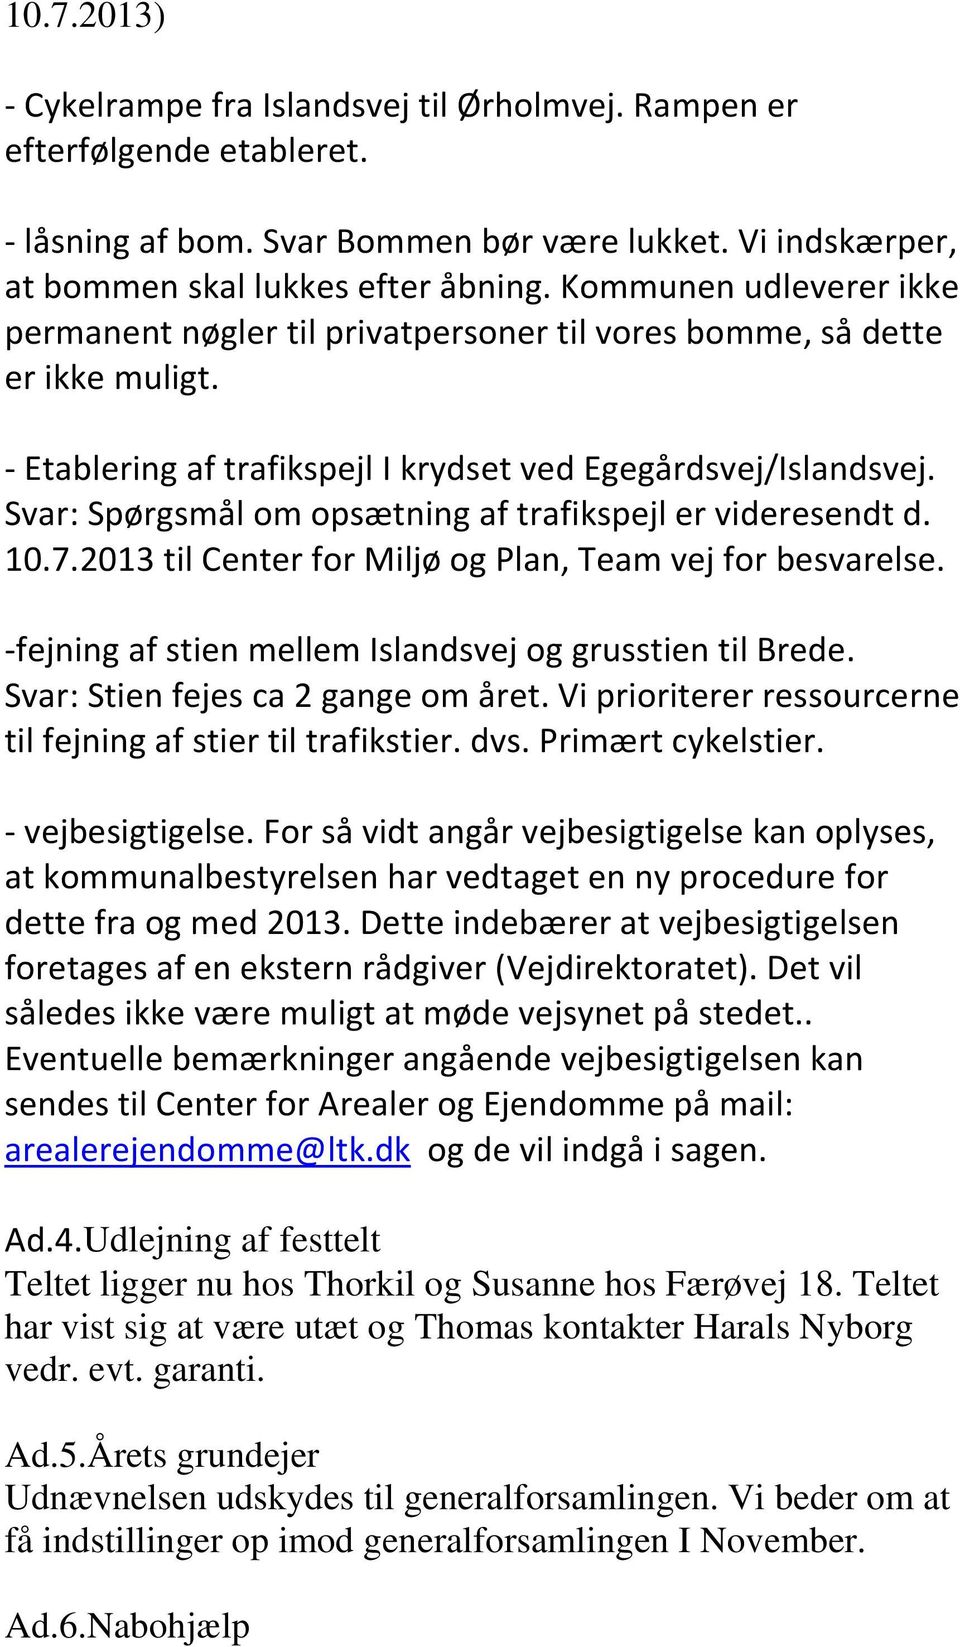 Svar: Spørgsmål om opsætning af trafikspejl er videresendt d. 10.7.2013 til Center for Miljø og Plan, Team vej for besvarelse. -fejning af stien mellem Islandsvej og grusstien til Brede.